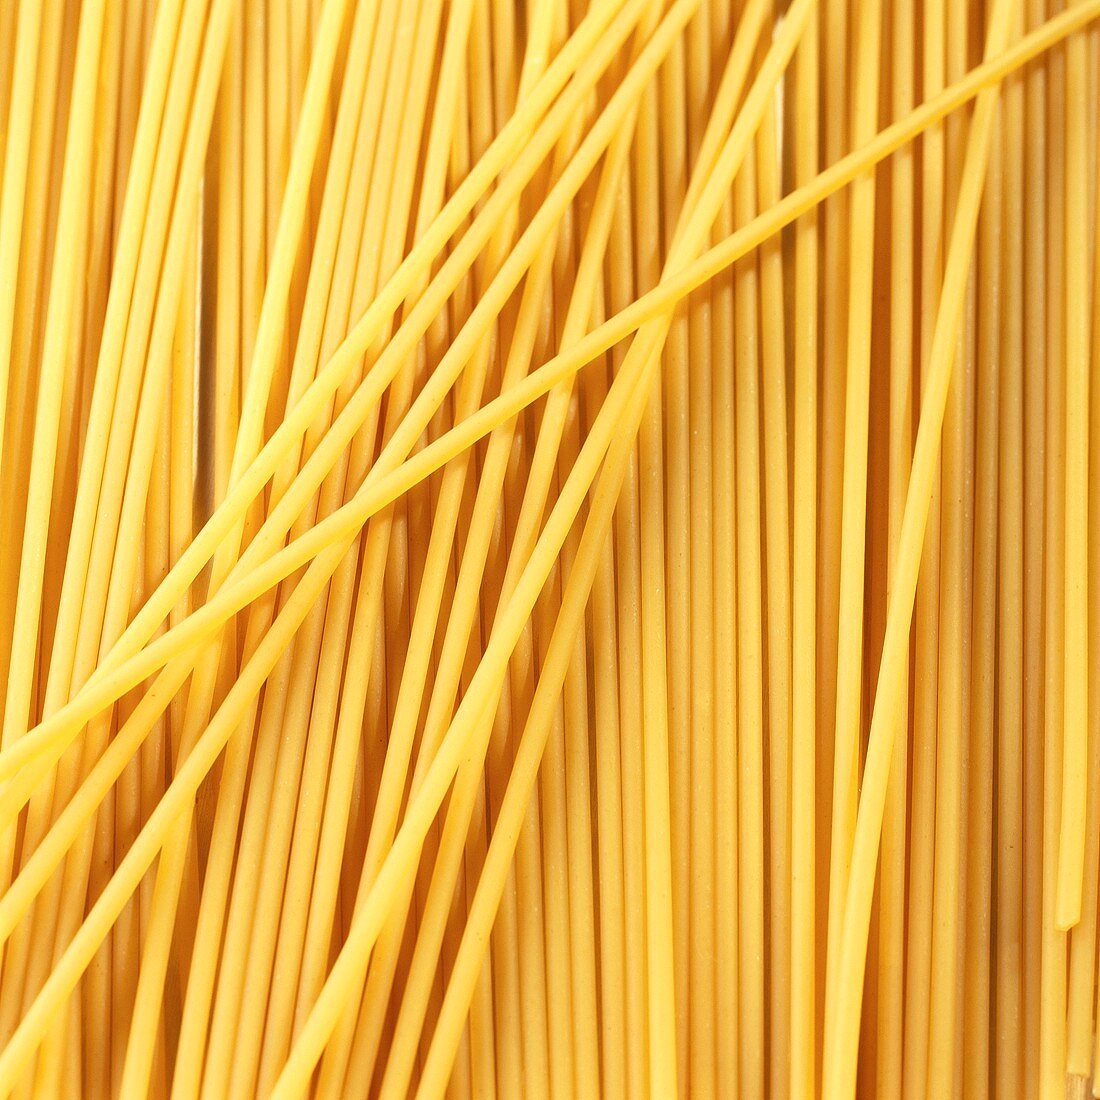 Spaghetti (filling the picture)